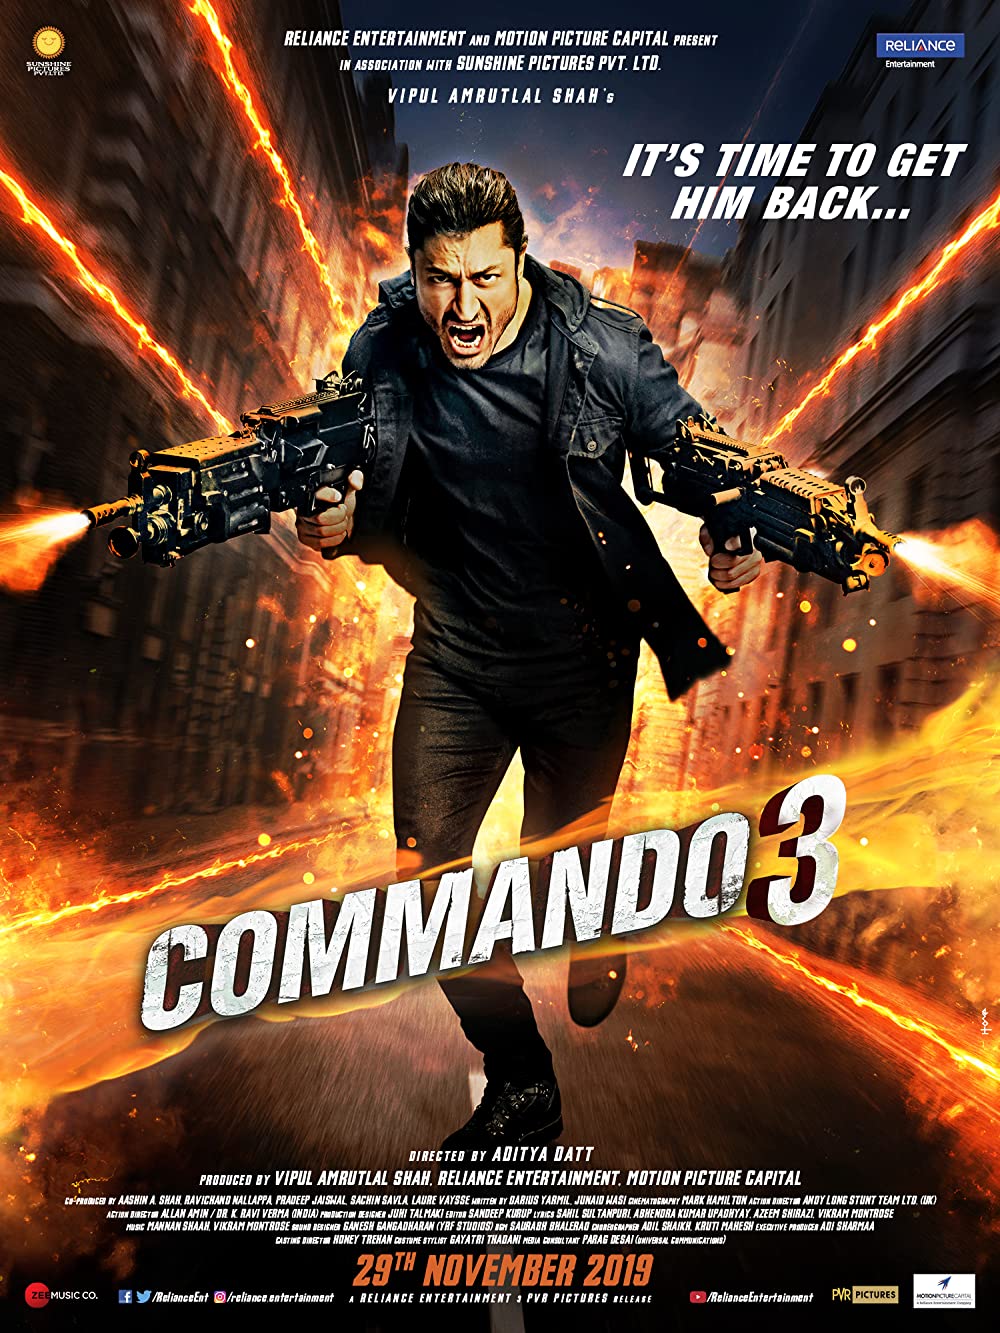 Filmbeschreibung zu Commando 3